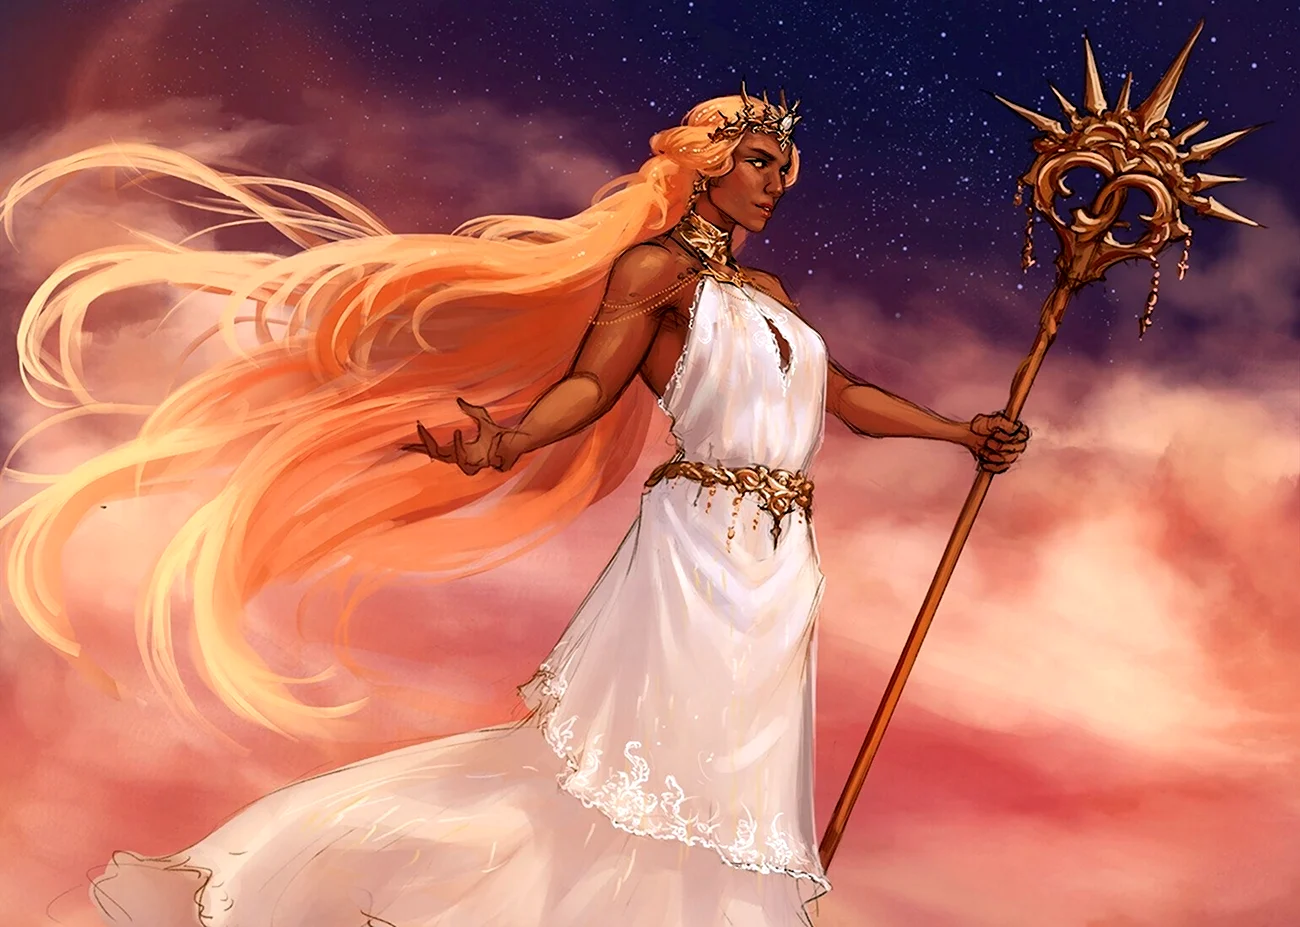 ЭНИО Греческая богиня. Картинка из мультфильма